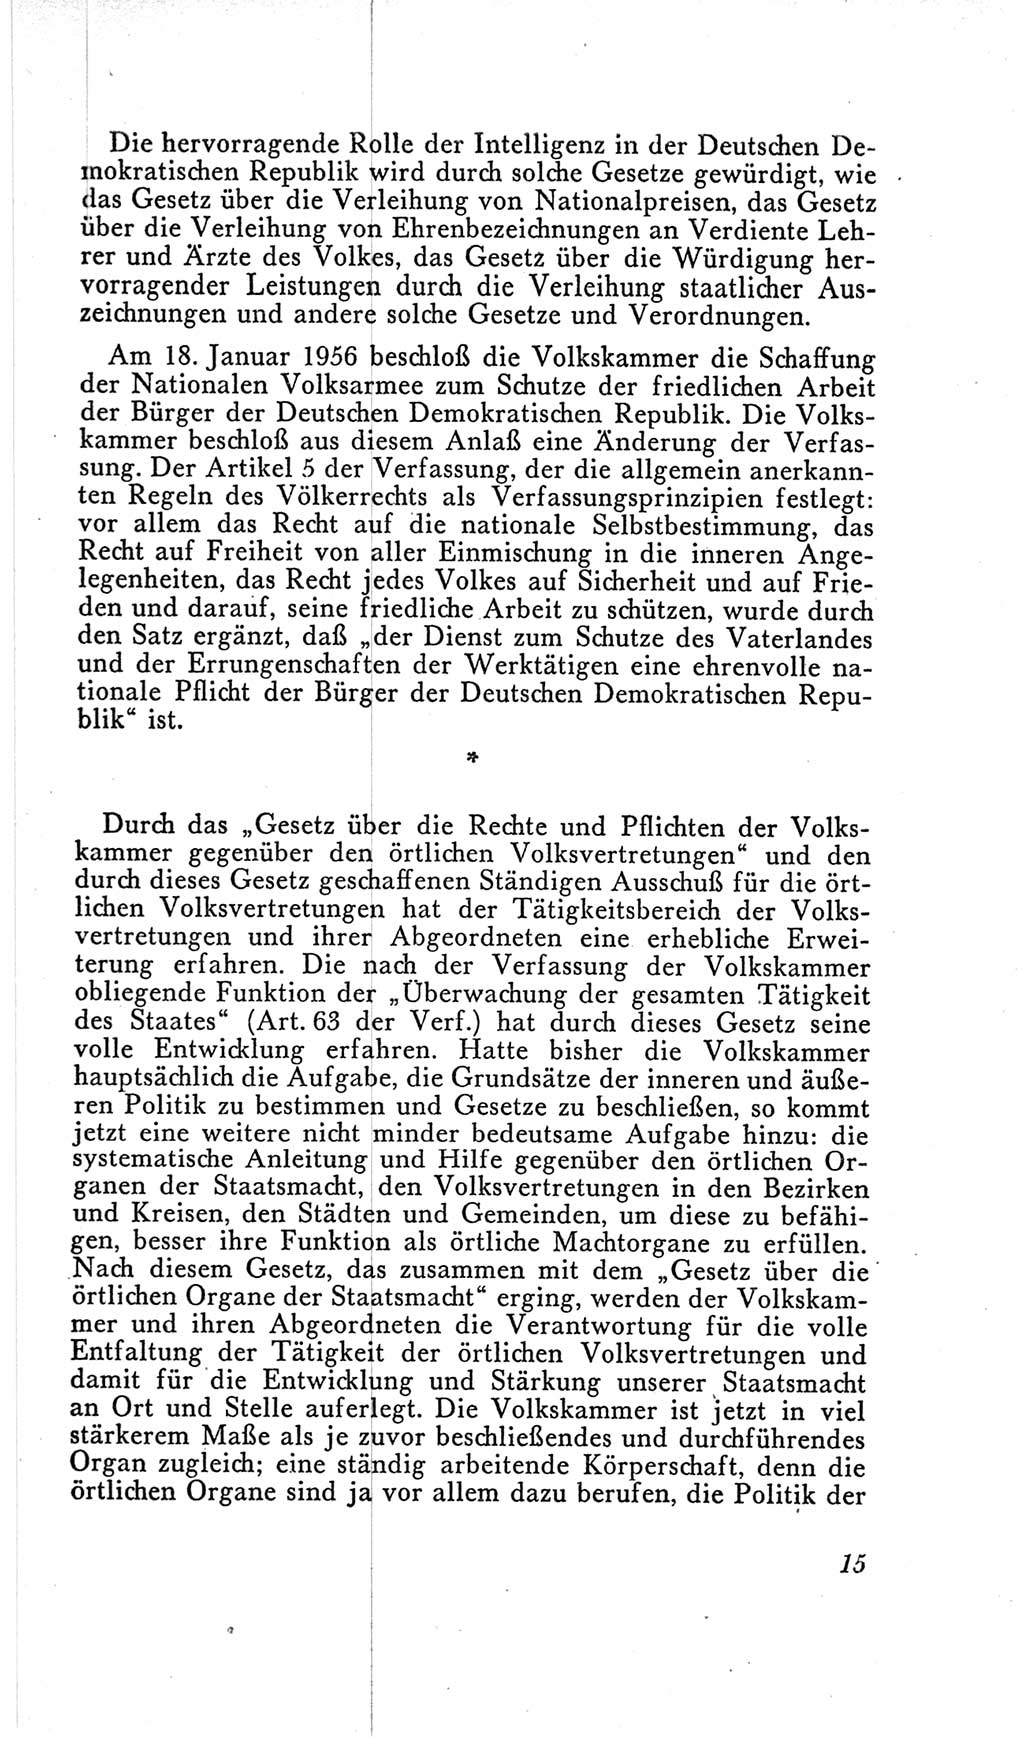 Handbuch der Volkskammer (VK) der Deutschen Demokratischen Republik (DDR), 2. Wahlperiode 1954-1958, Seite 15 (Hdb. VK. DDR, 2. WP. 1954-1958, S. 15)